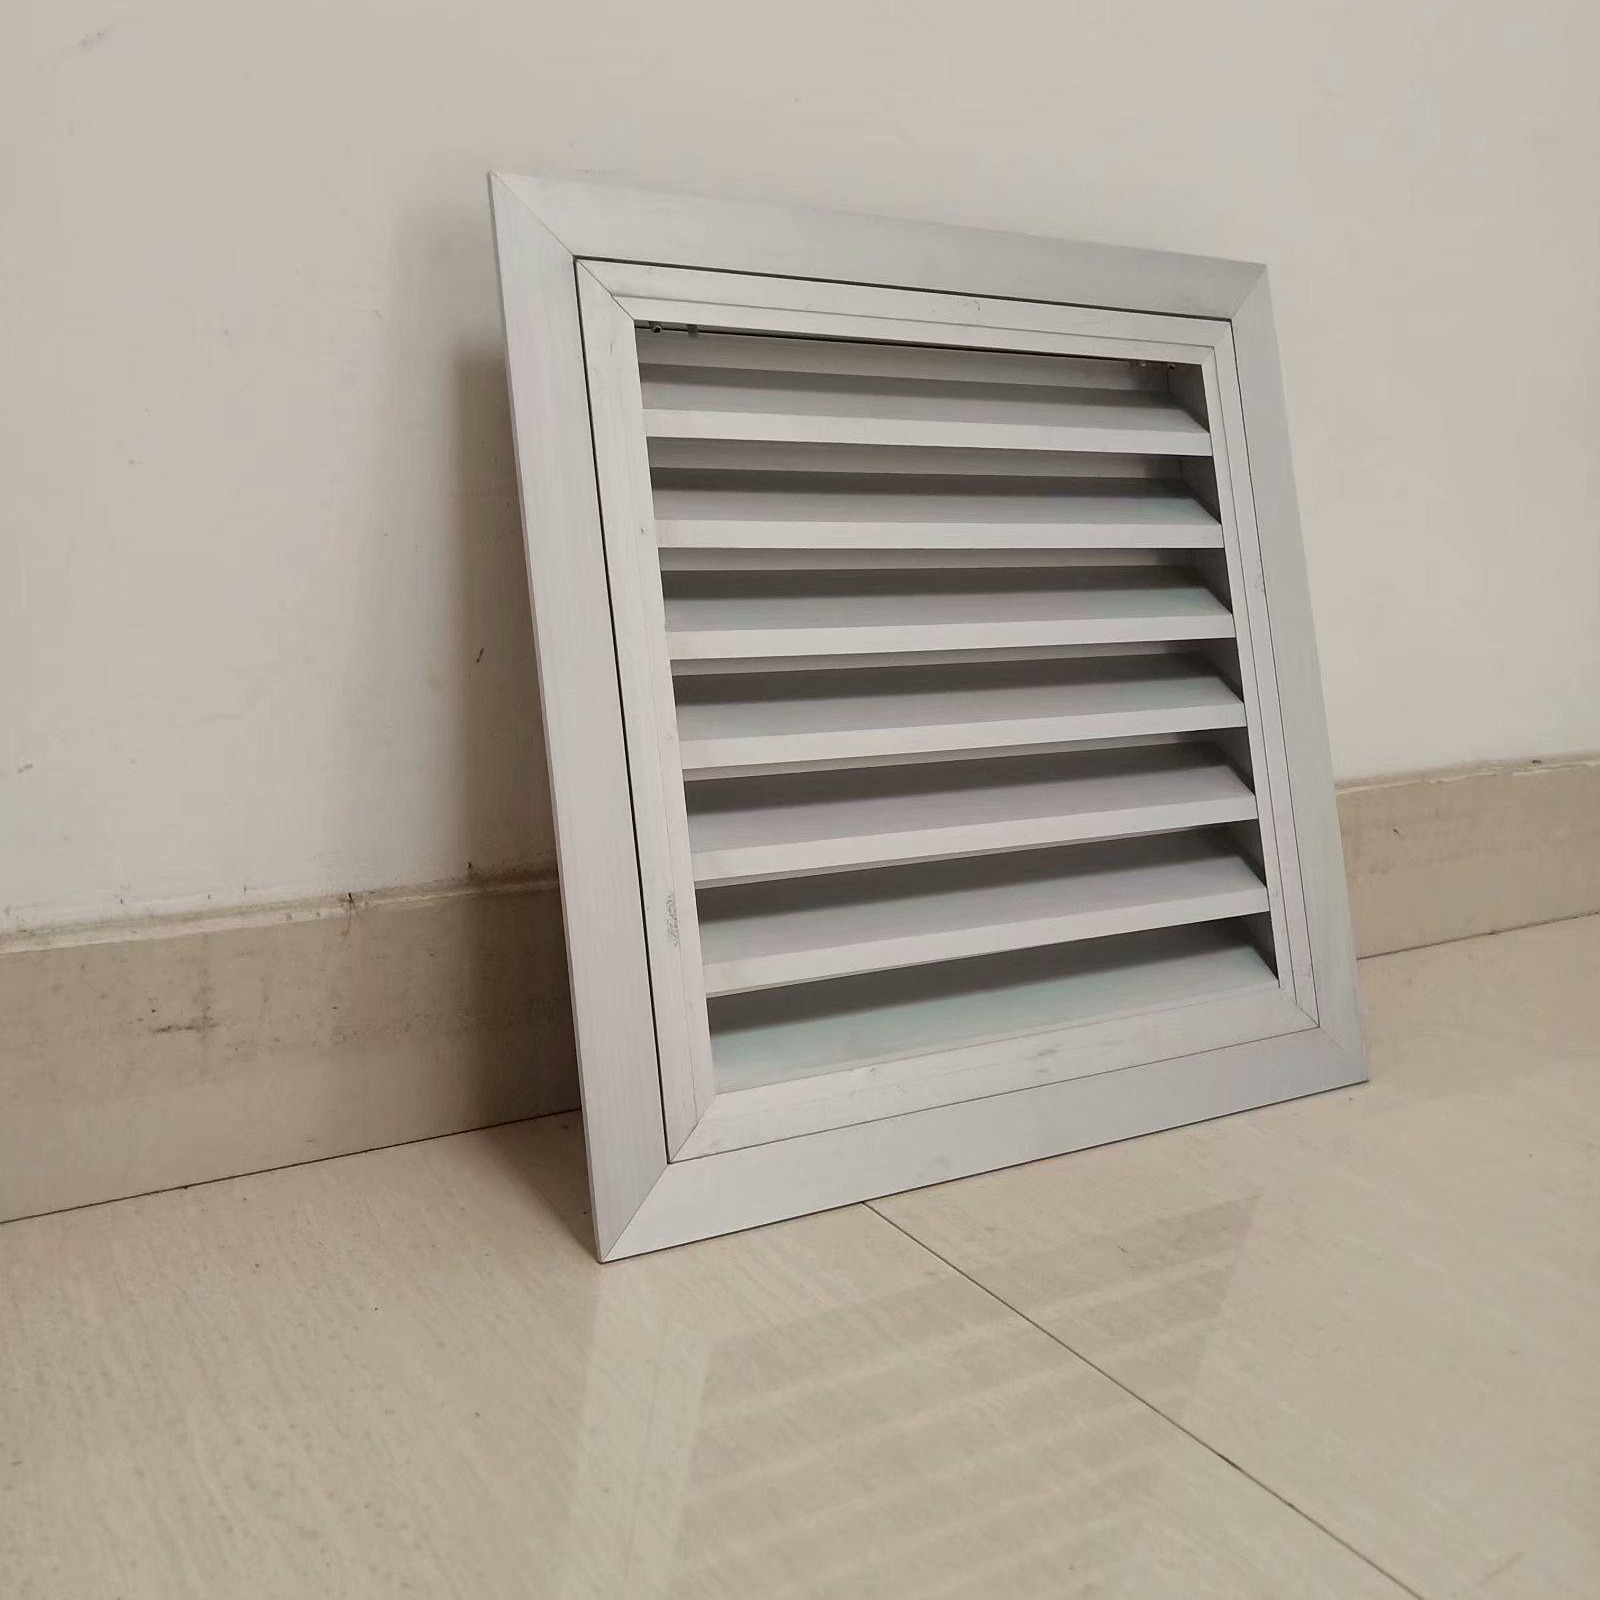 铝合金百叶窗   可开式铝合金百叶  广泛用于集装箱通风   电器柜散热  带初效过滤更好的净化空气明田机械